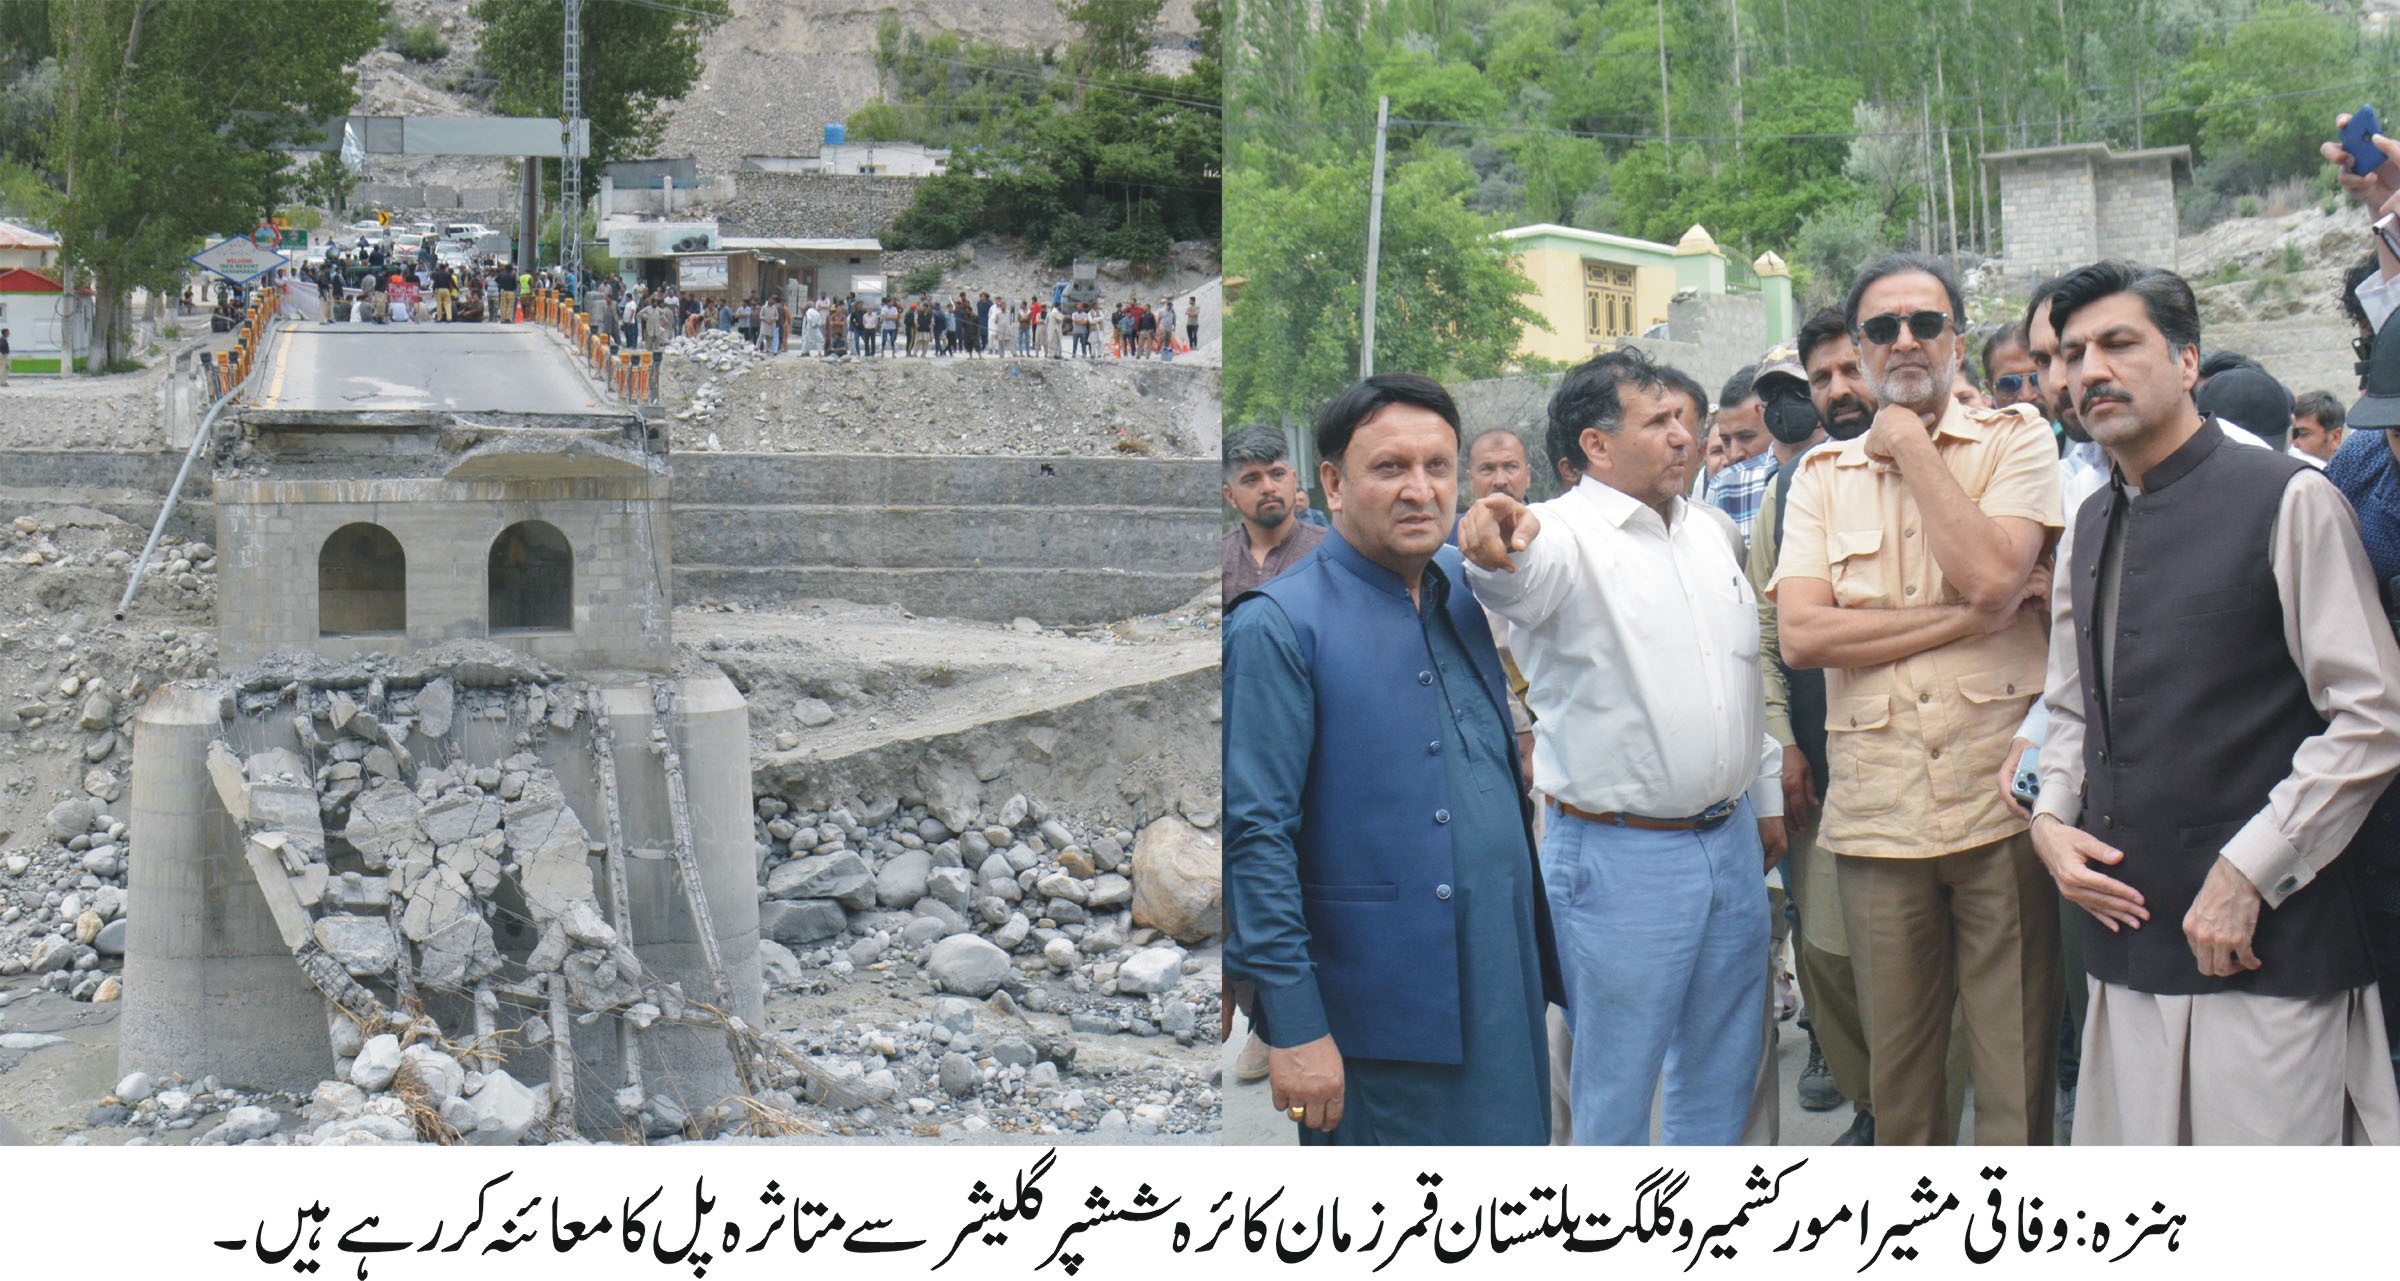 وفاقی مشیر امور کشمیر وگلگت بلتستان قمر زمان کائرہ کا دورہ ہنزہ حسن آباد، سیلاب متاثرین سے ملاقات، مطالبات جلد منظور کرنے کا وعدہ